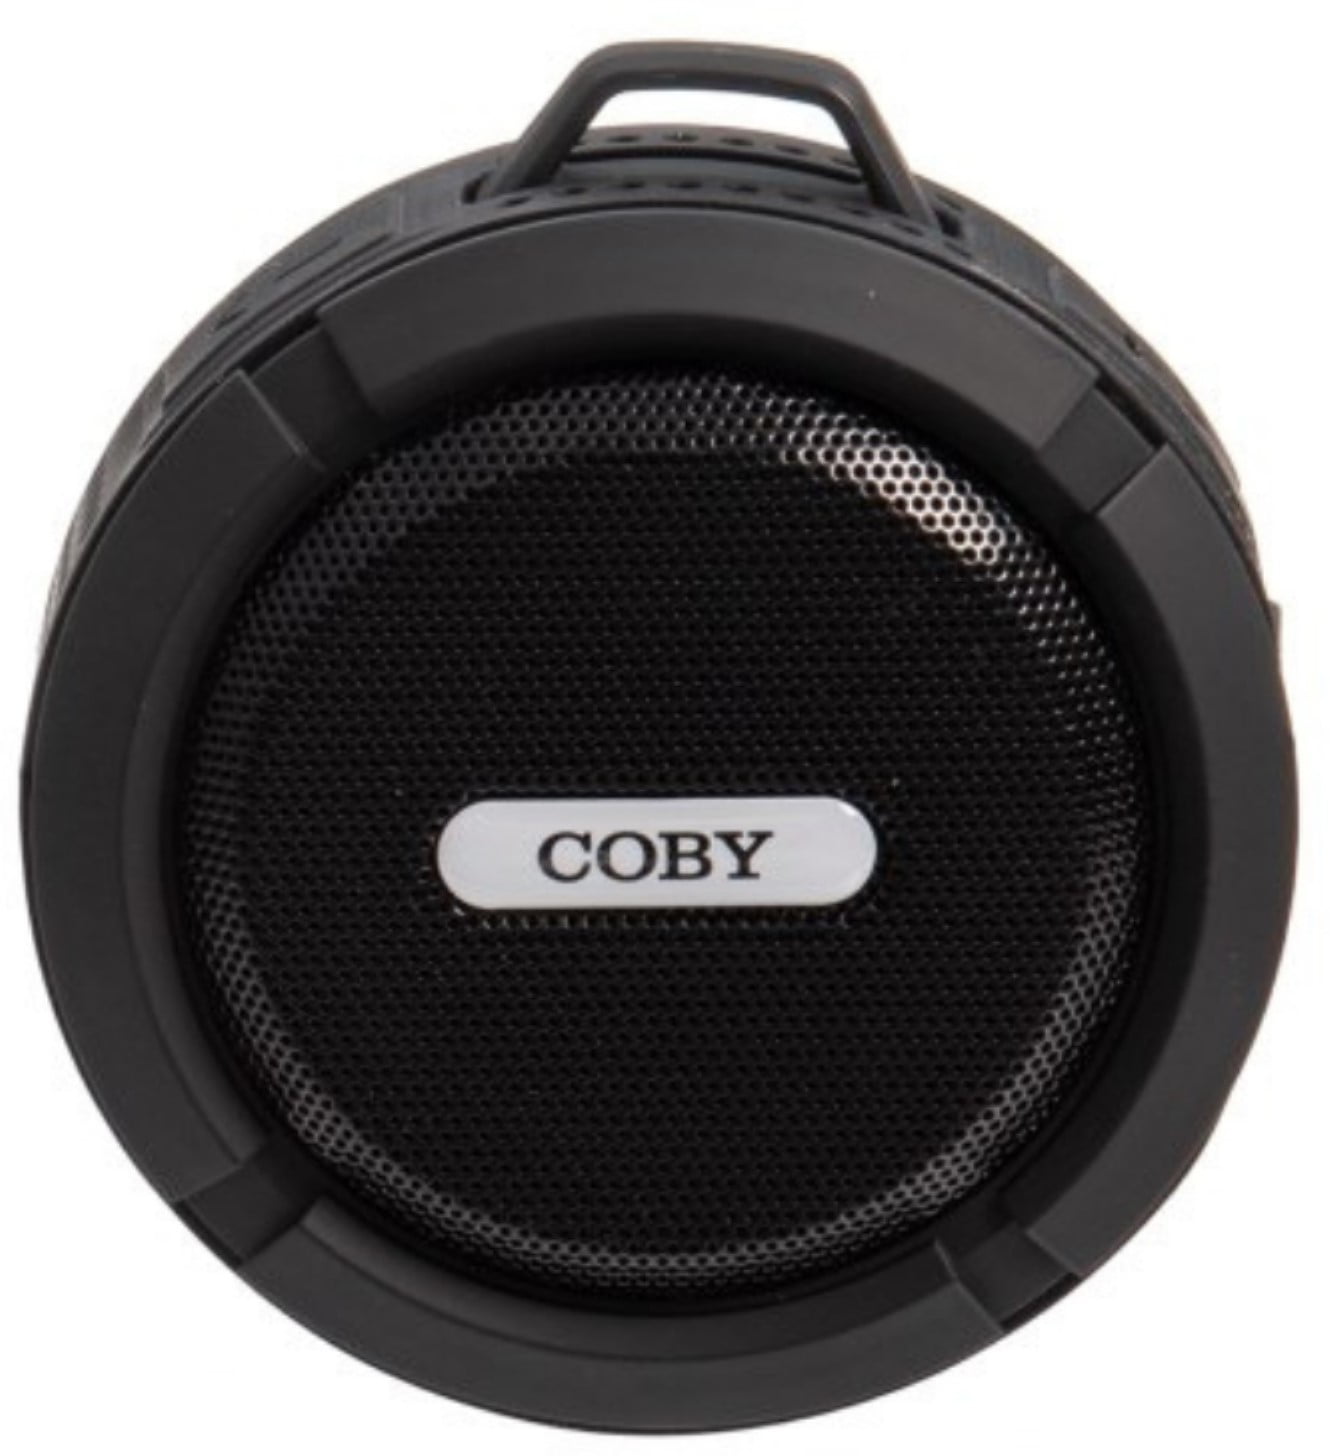 Coby Waterproof Portable Handheld 